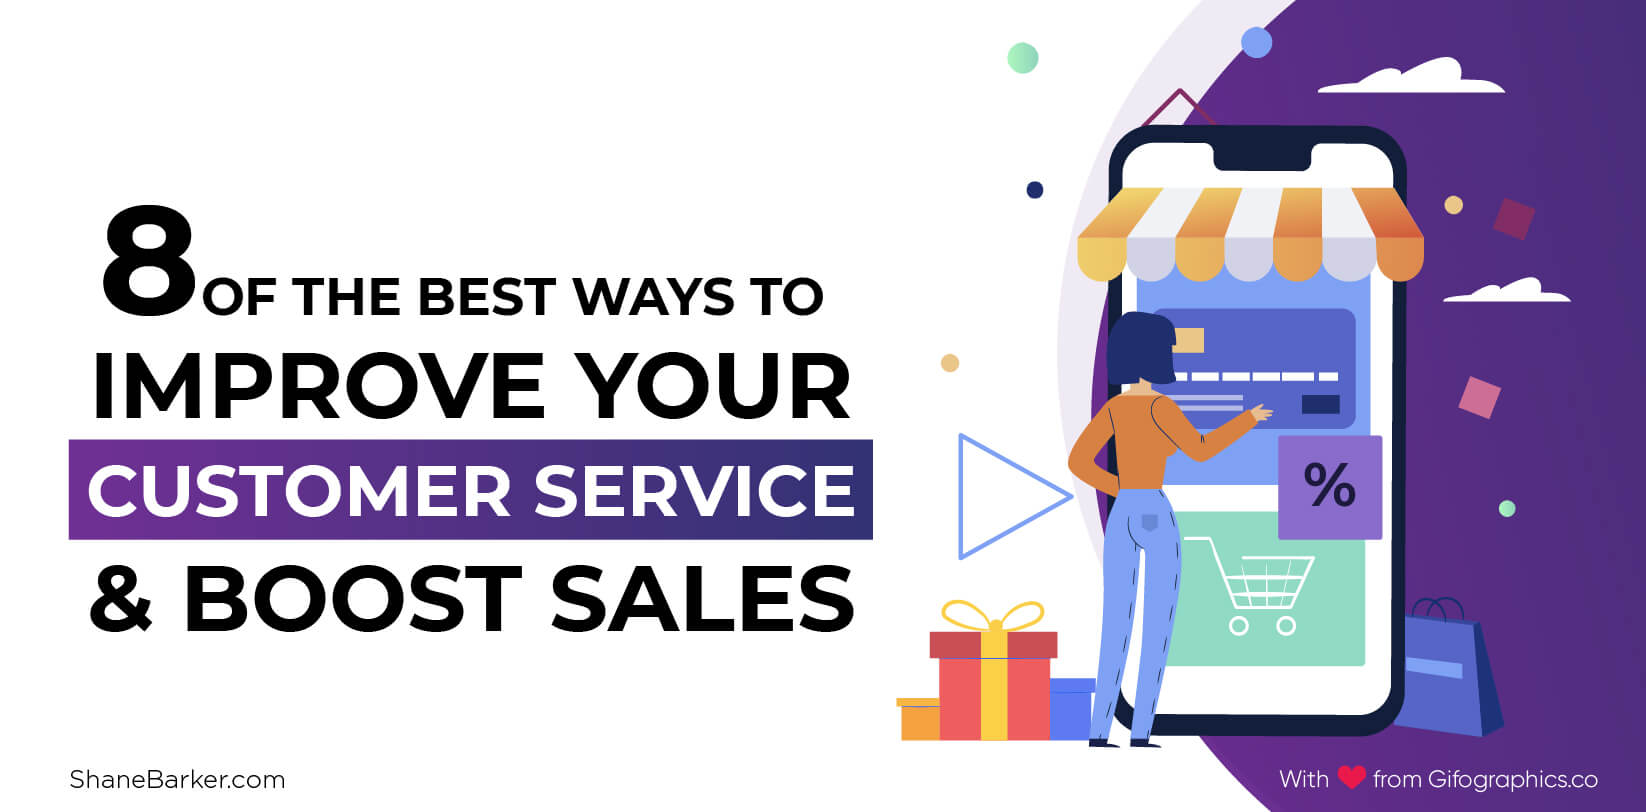 カスタマーサービスを改善し、売り上げを伸ばすための8つの最良の方法（2019年9月更新）